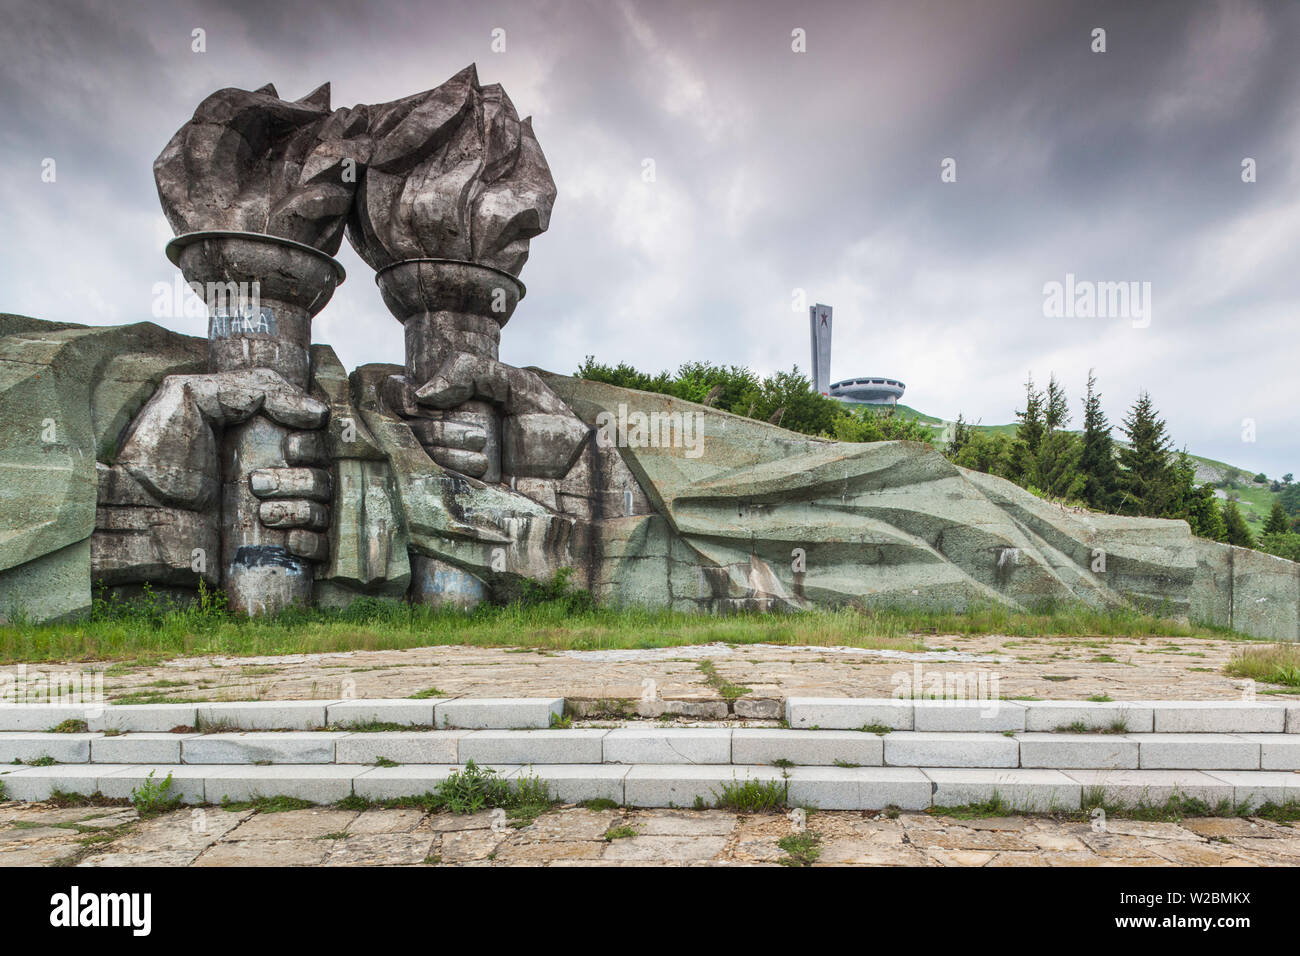 La Bulgaria, centrale Monti, Shipka, Shipka Pass, Rovine dell'era sovietica Monumento Buzludzha, costruito in onore del partito comunista bulgaro nel1981, tardo pomeriggio Foto Stock